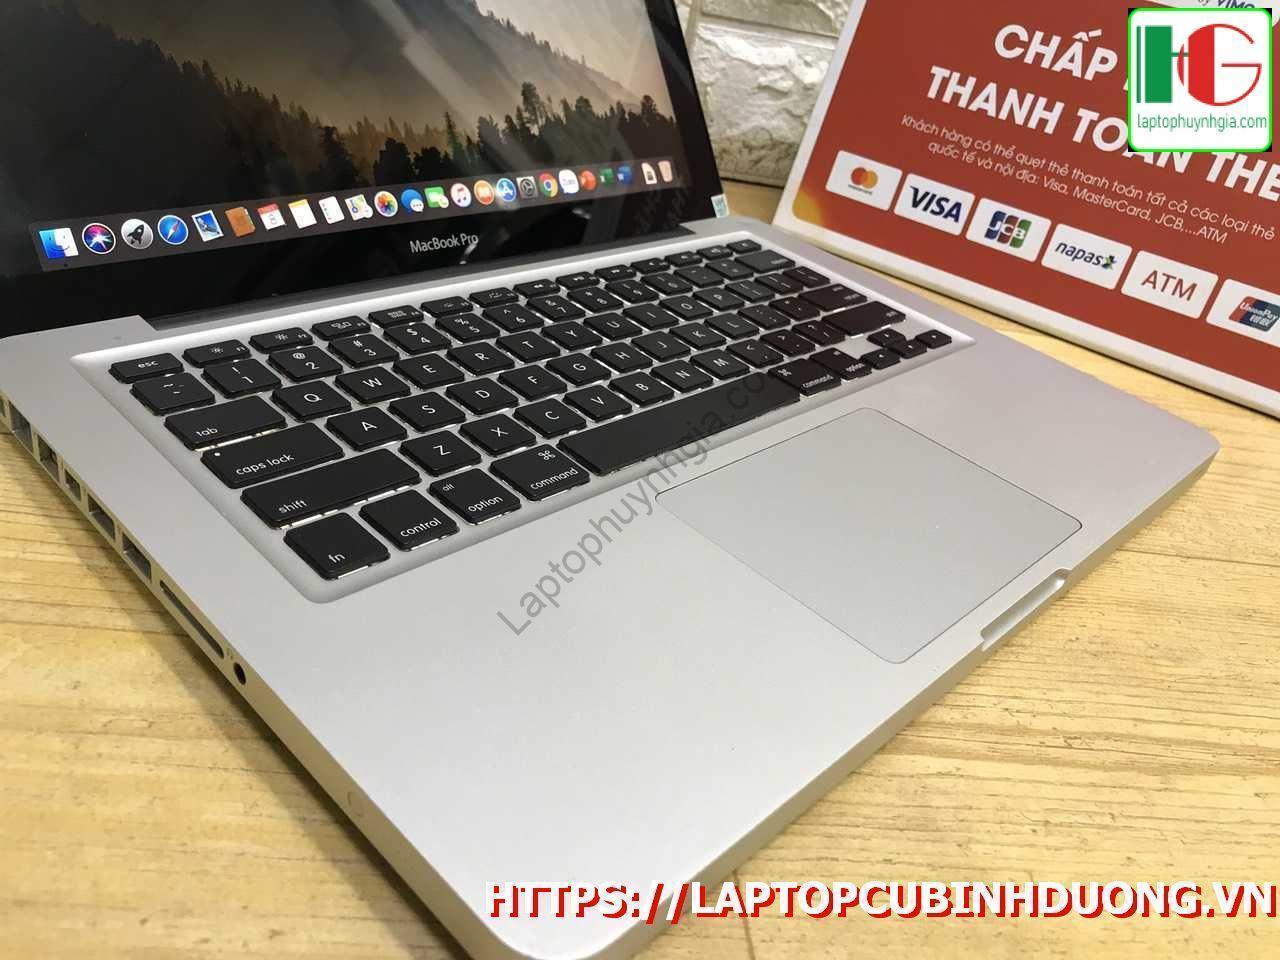 Macbook Pro 2012 I5 Ram 4g Ssd 256g Lcd 13 Laptopcubinhduong.vn [kích Thước Gốc] Result